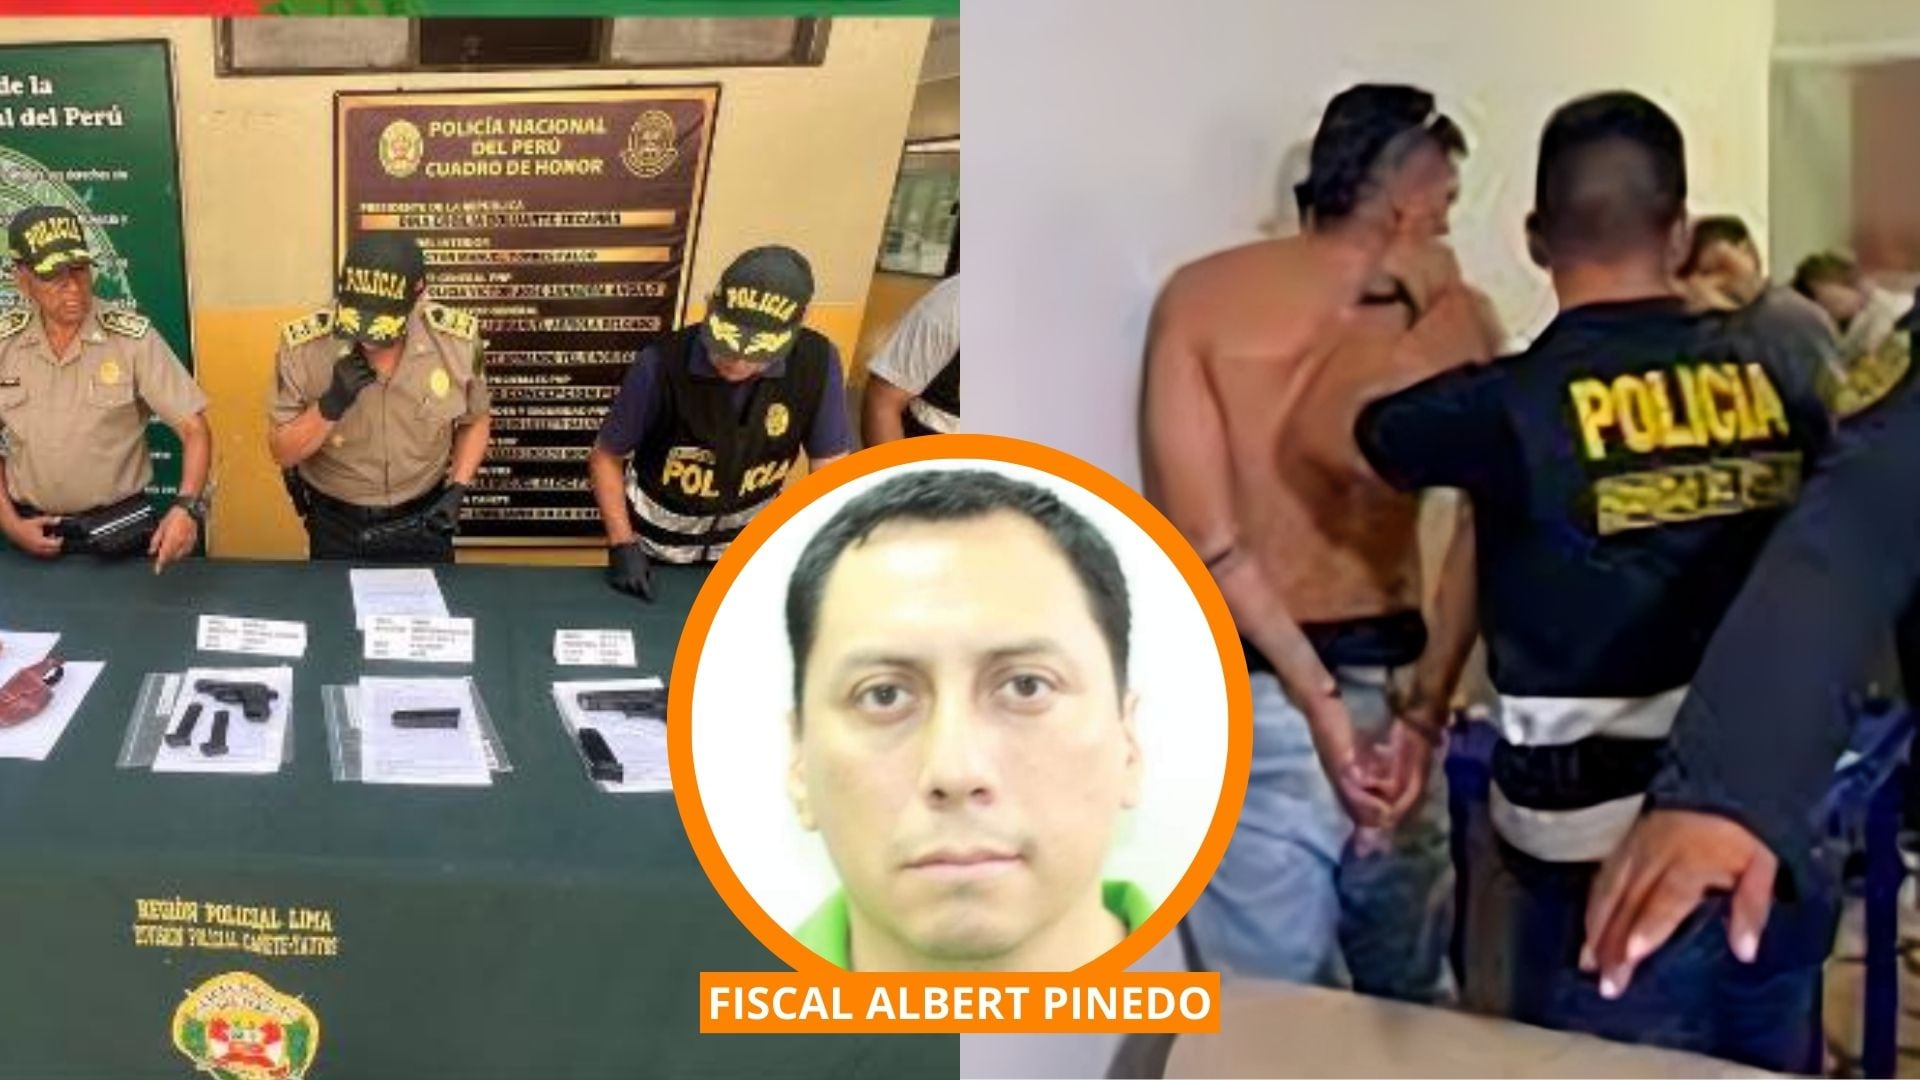 Fotocomposición de intervención policial, muestra de armas y la foto del fiscal Albert Pinedo